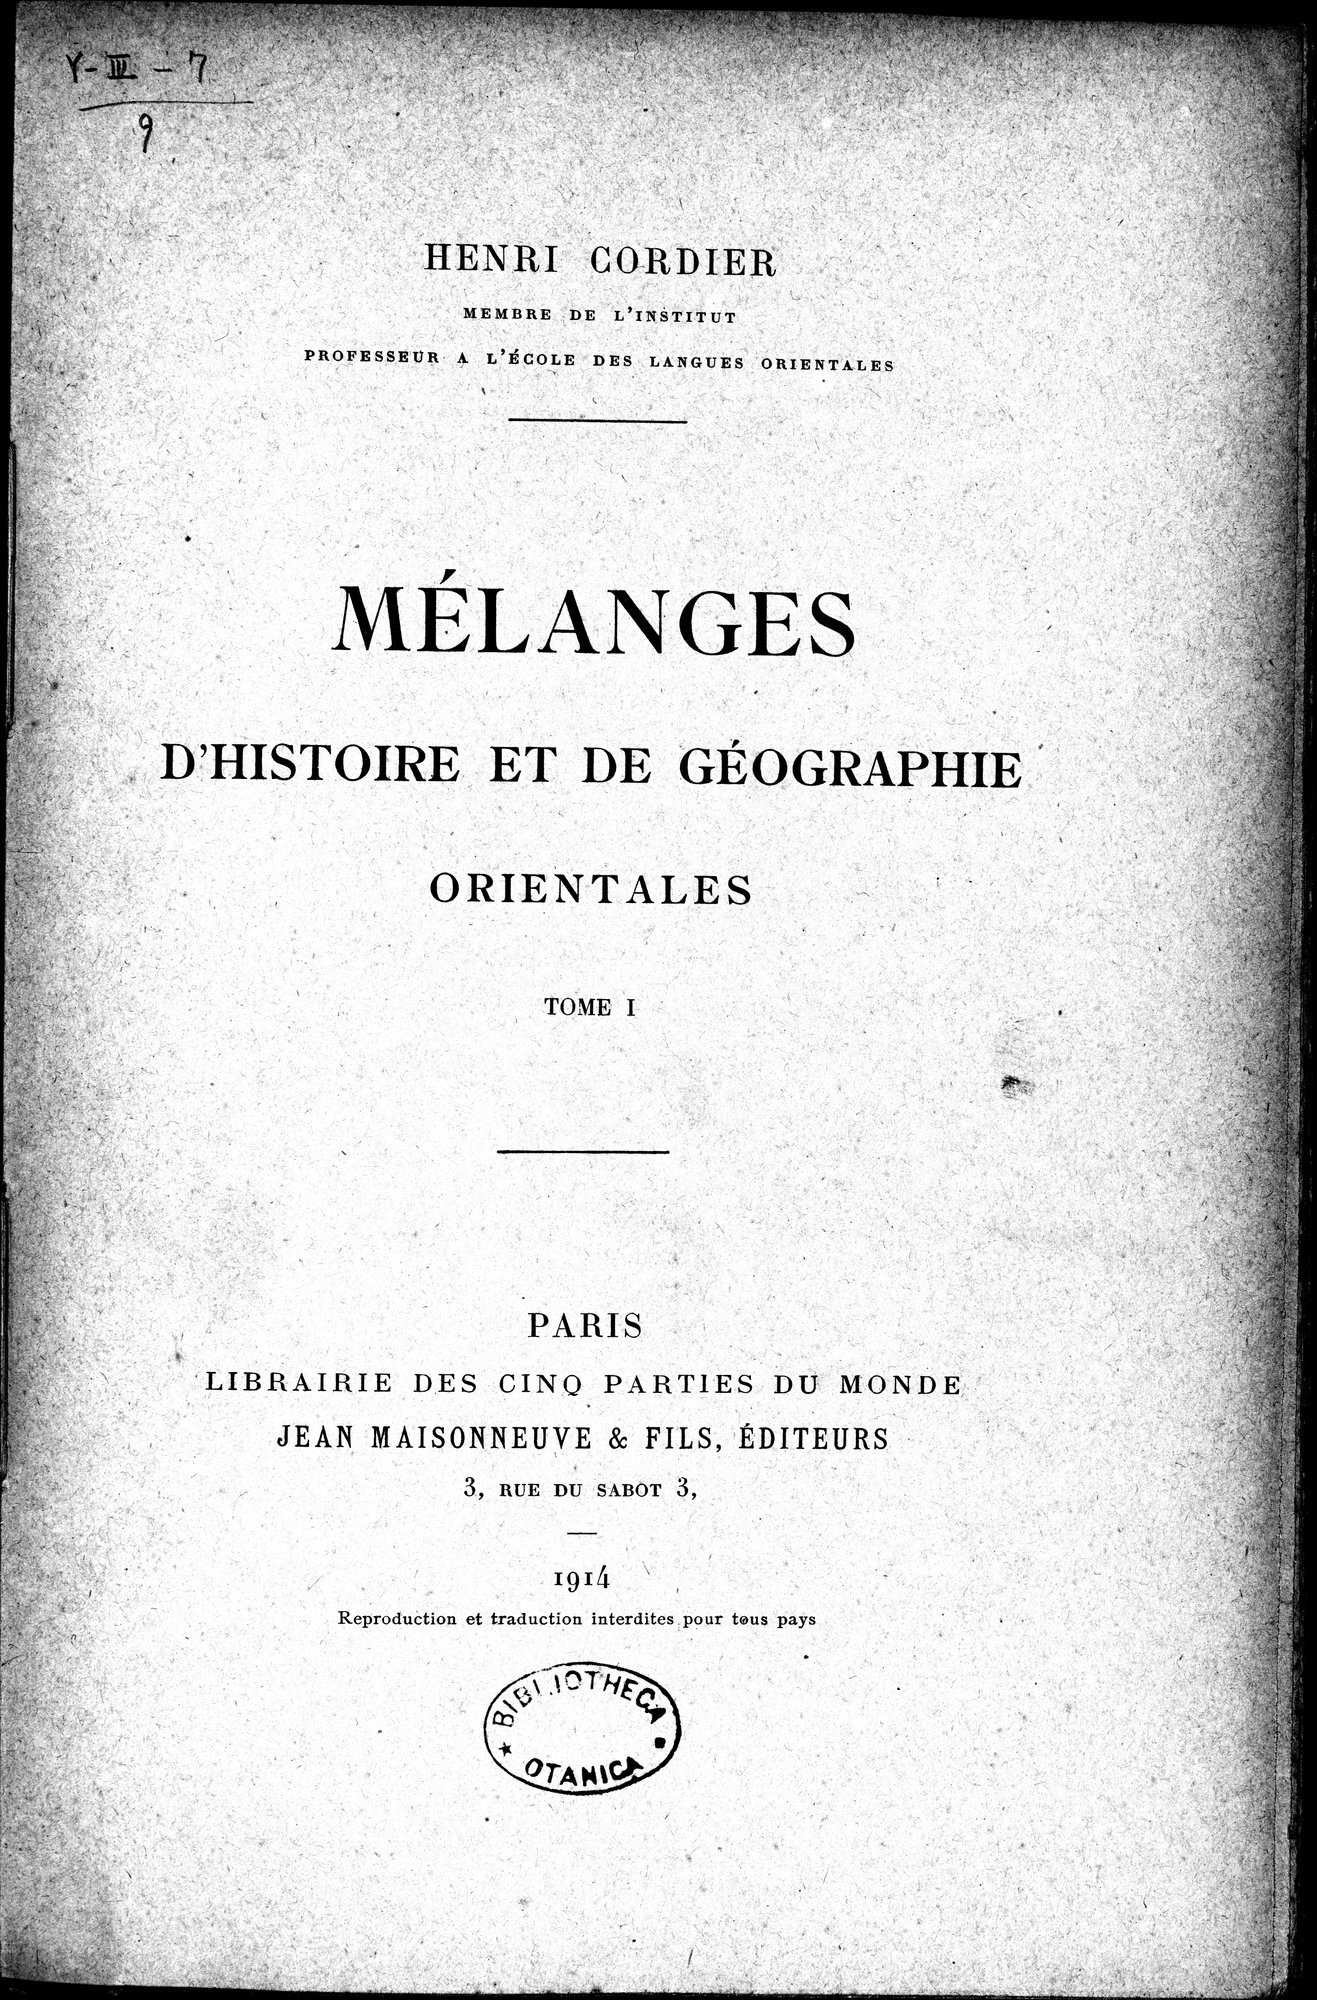 Mélanges d'Histoire et de Géographie Orientales : vol.1 / Page 7 (Grayscale High Resolution Image)